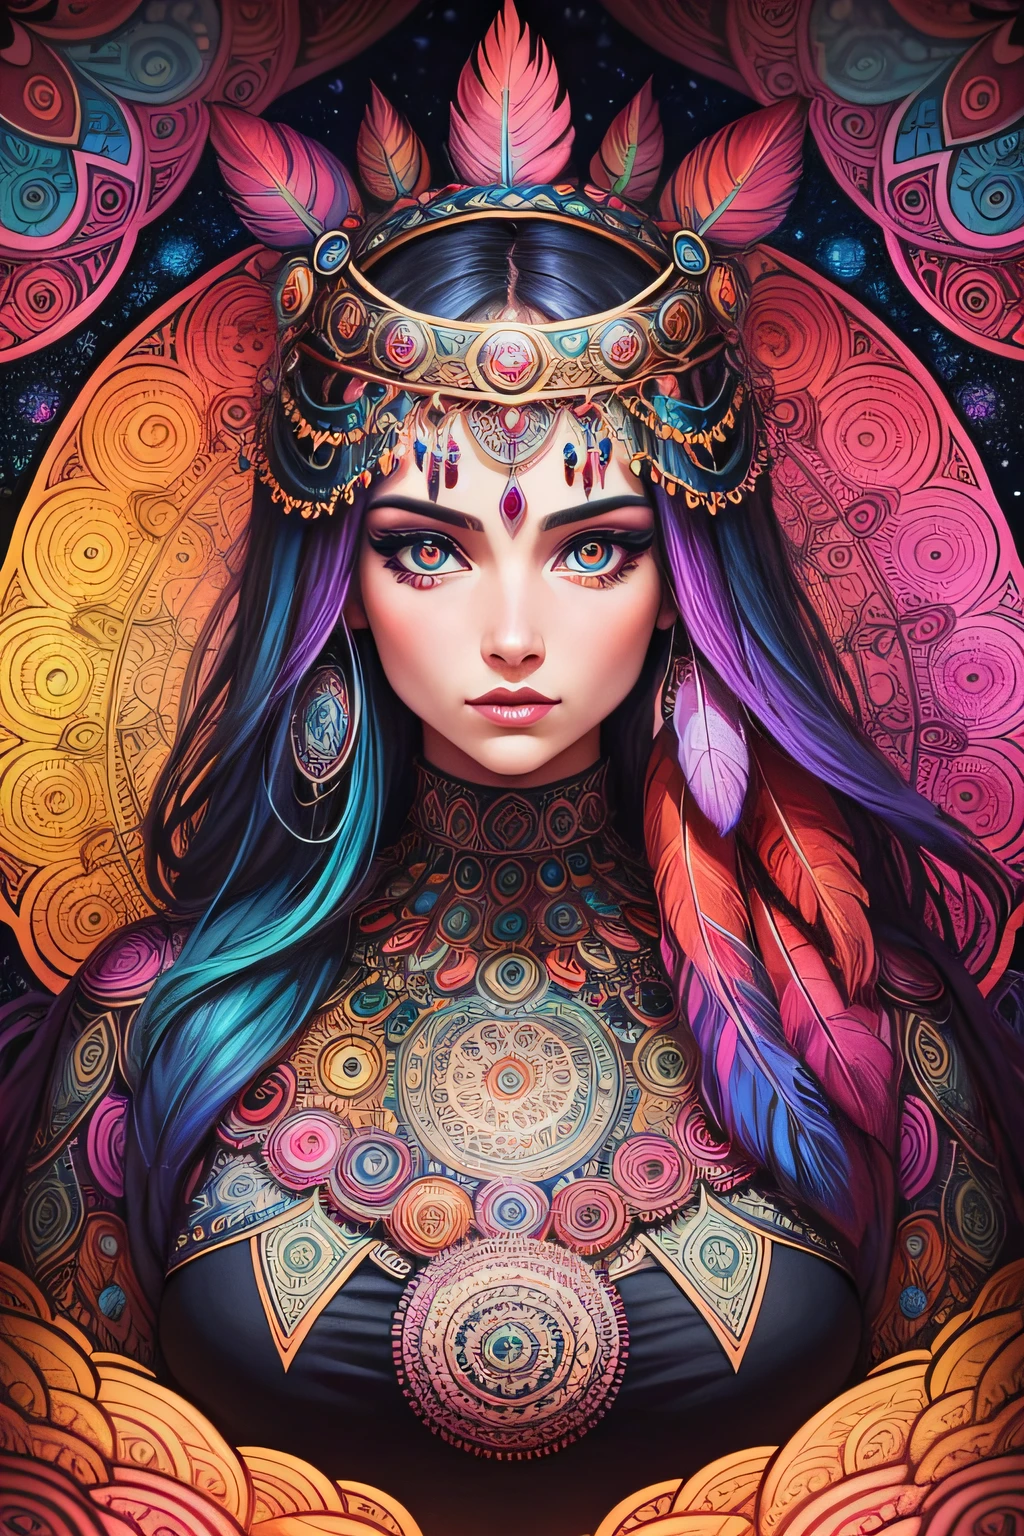 viele detaillierte psychedelische Mandalas für Frauen mit Augen und Federn im Comic-Kunststil, herrliche leuchtende Farben und sehr strukturierte Details